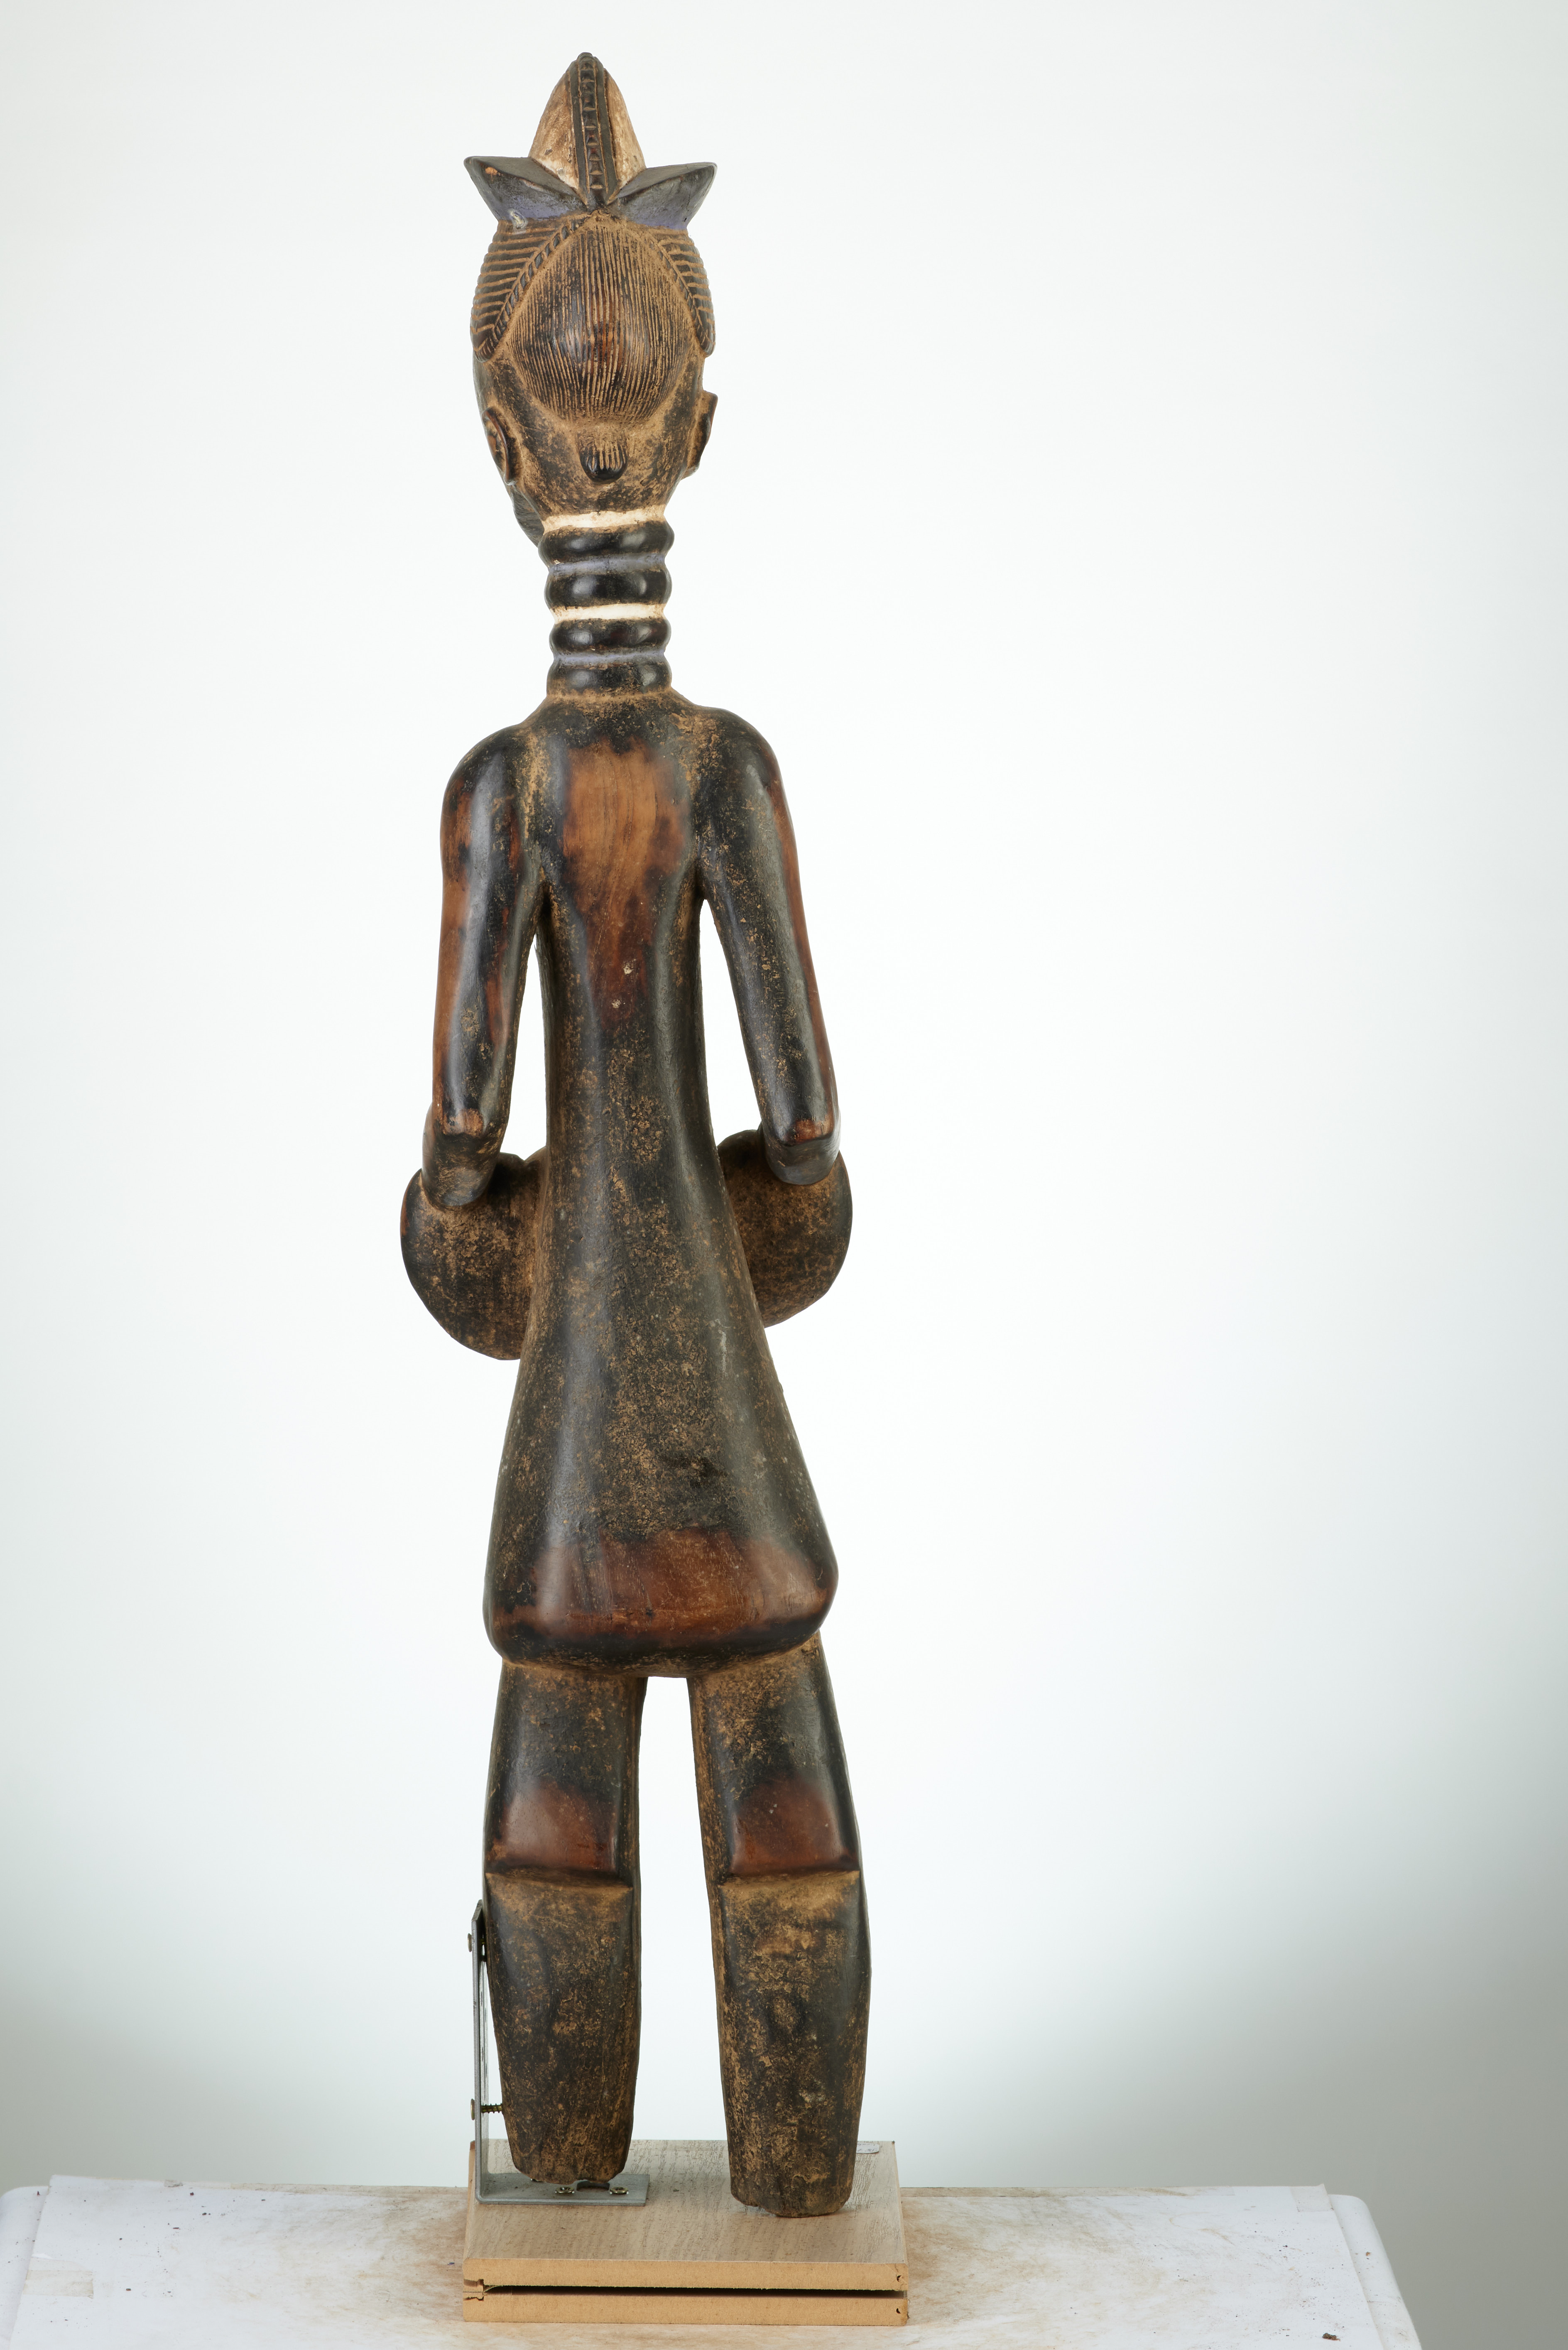 Koulango(statue), d`afrique : Côte d